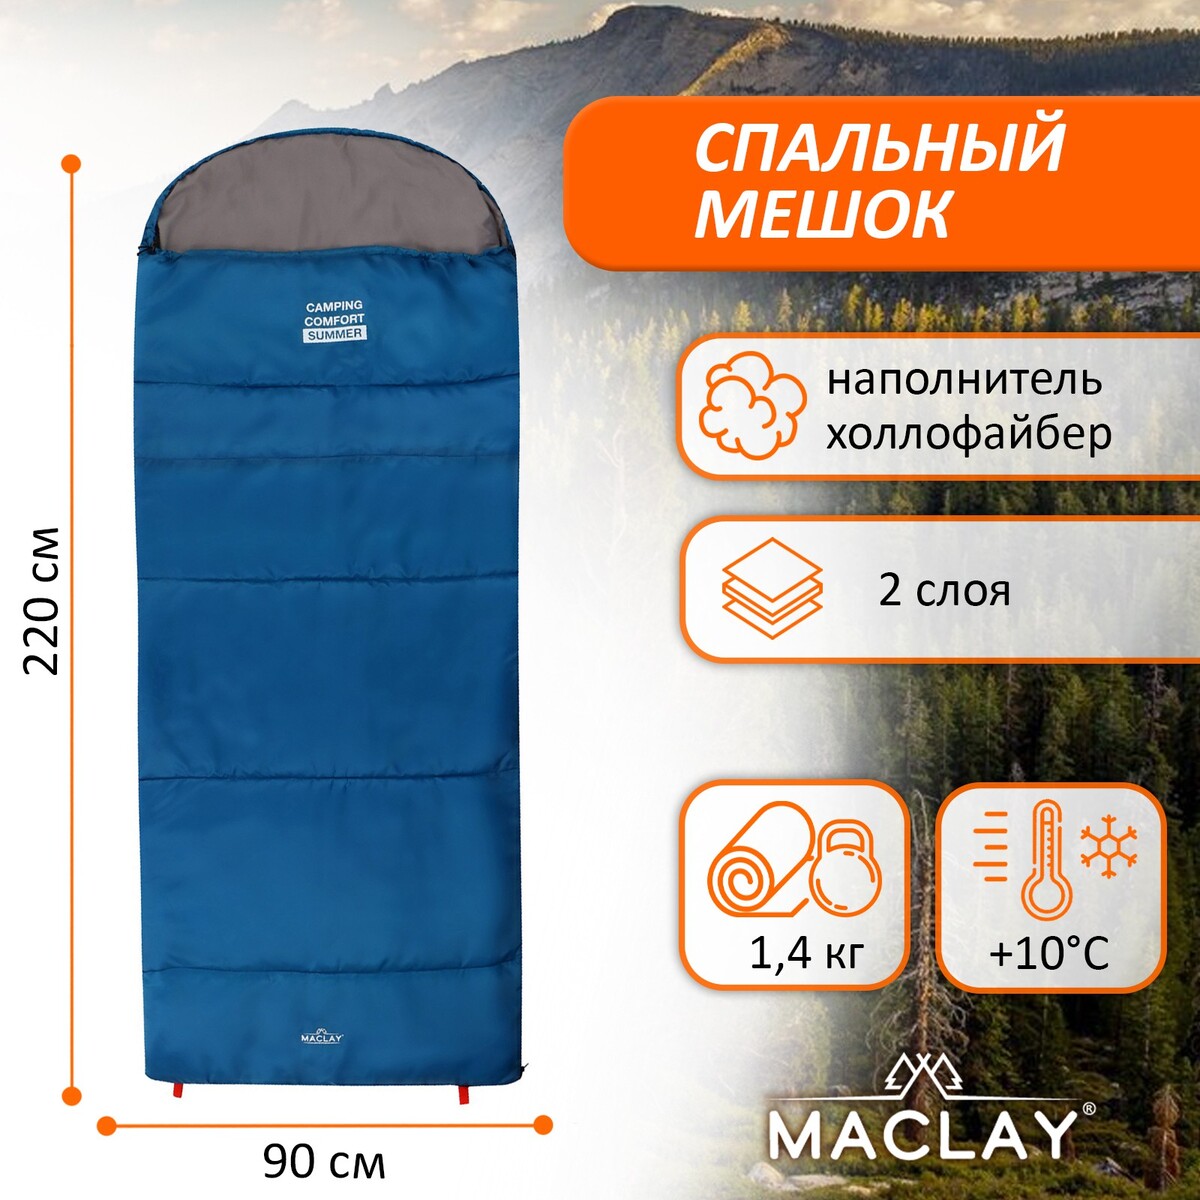 Спальный мешок maclay camping comfort summer, 2 слоя, левый, с подголовником, 220х90 см, +10/+25°с горшок summer infant